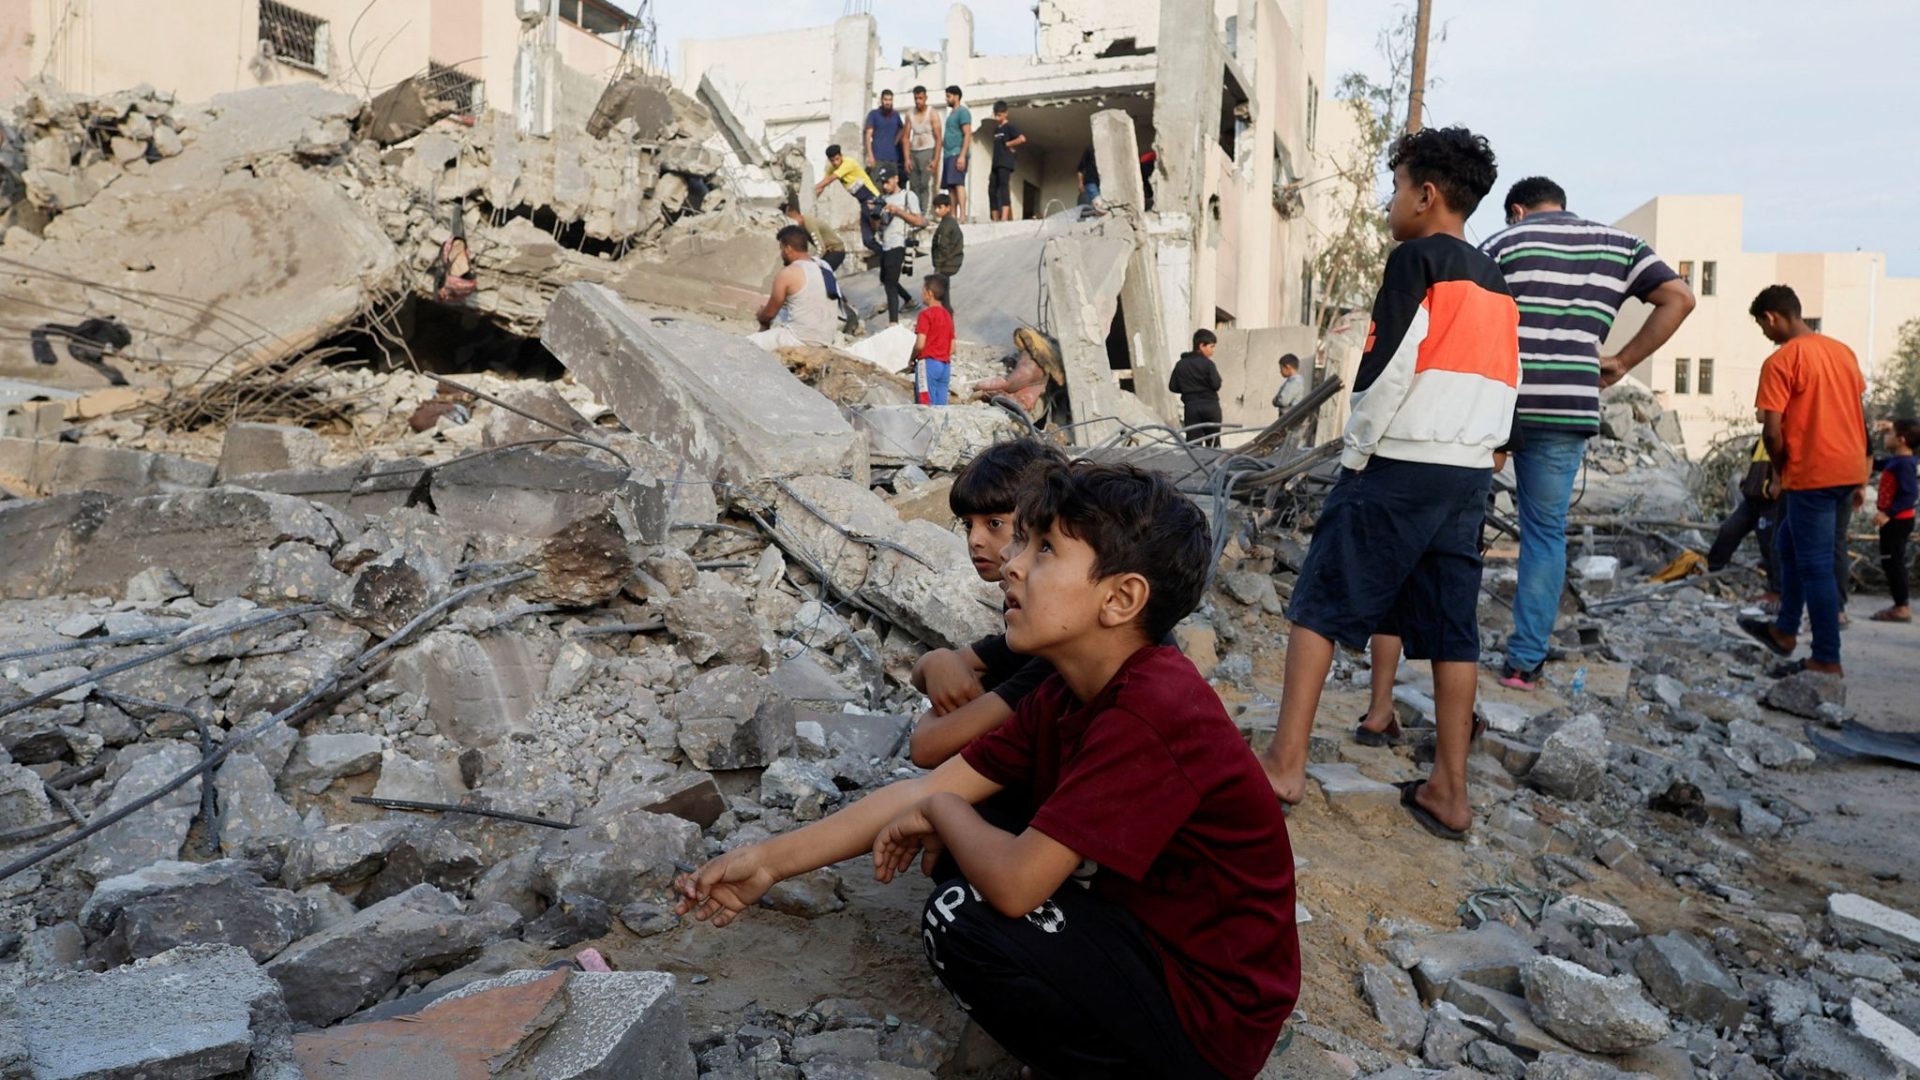 Biden to visit Israel as Gaza humanitarian crisis worsens